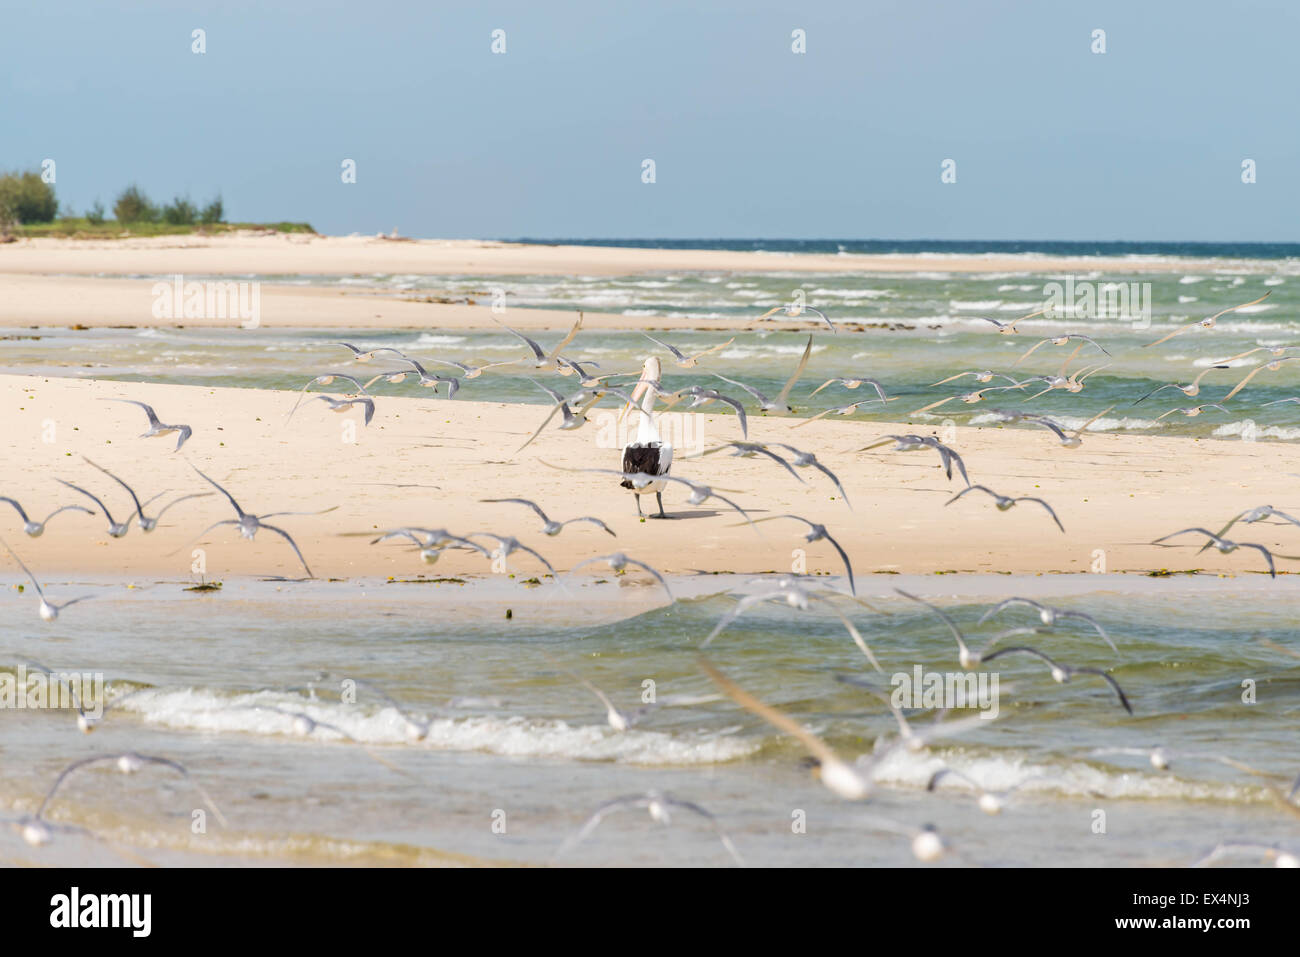 La sterne caspienne, les oiseaux de mer en survolant un pélican sur la plage Banque D'Images